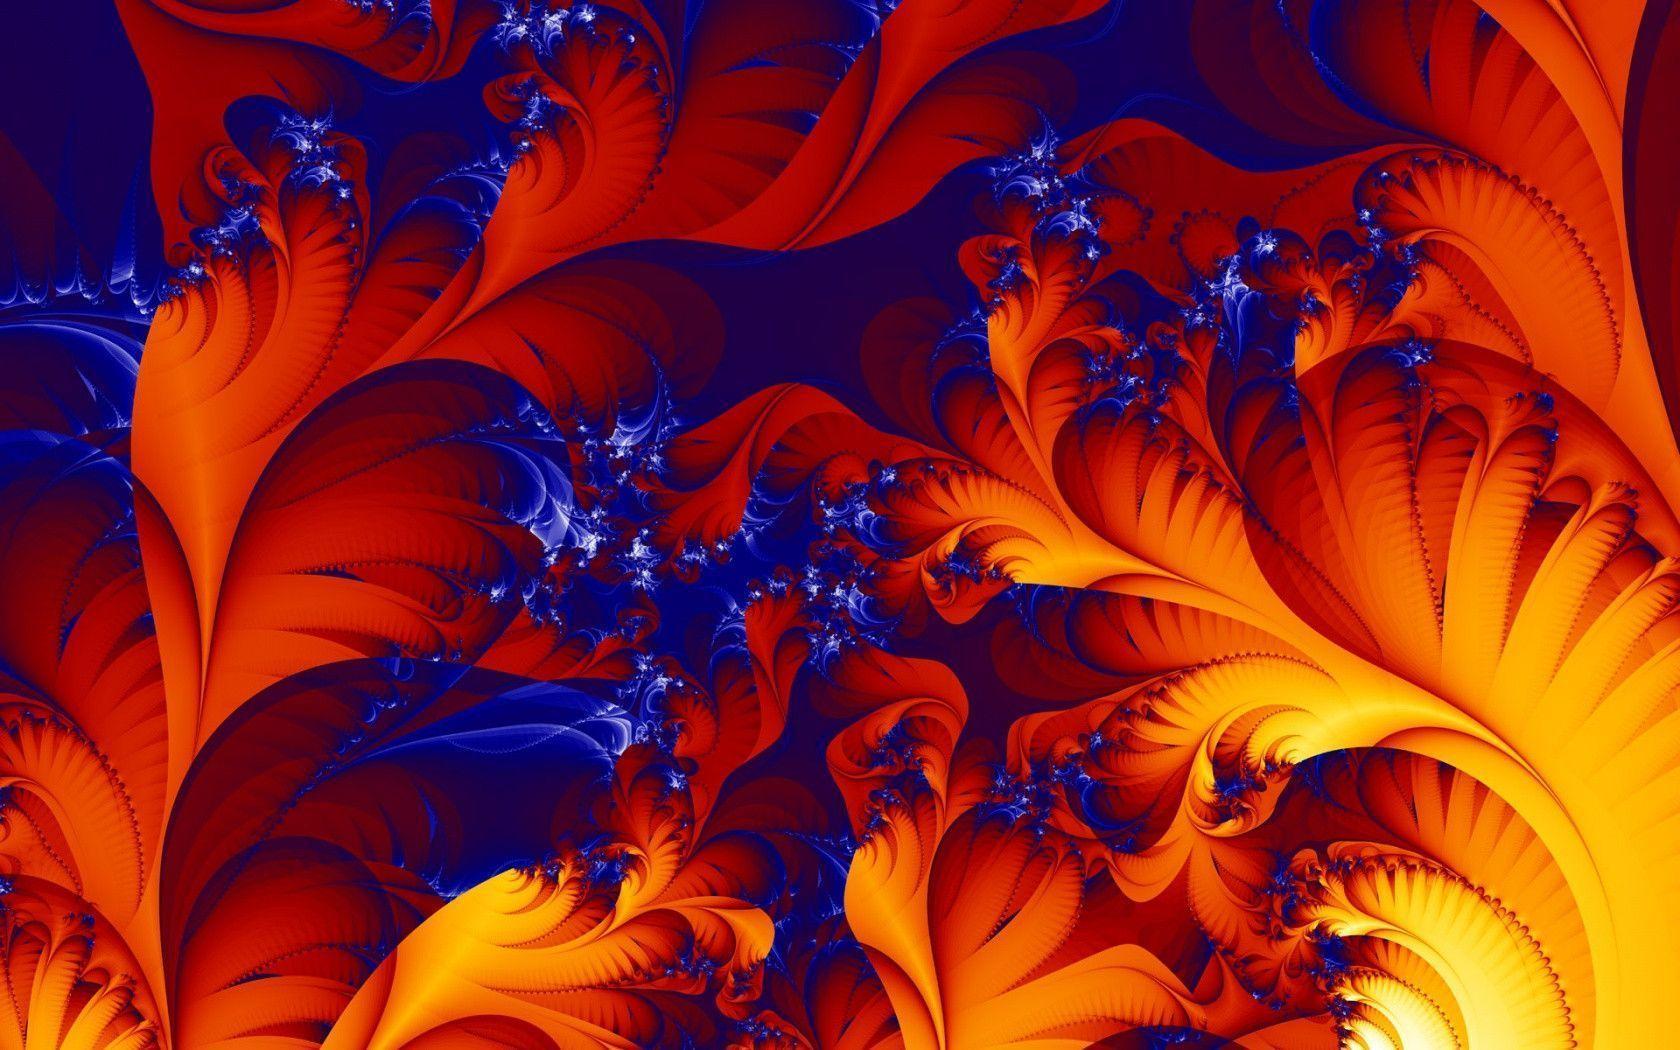 3D & Abstract, Entrancing Fire Effect Flower Notebook Wallpaper